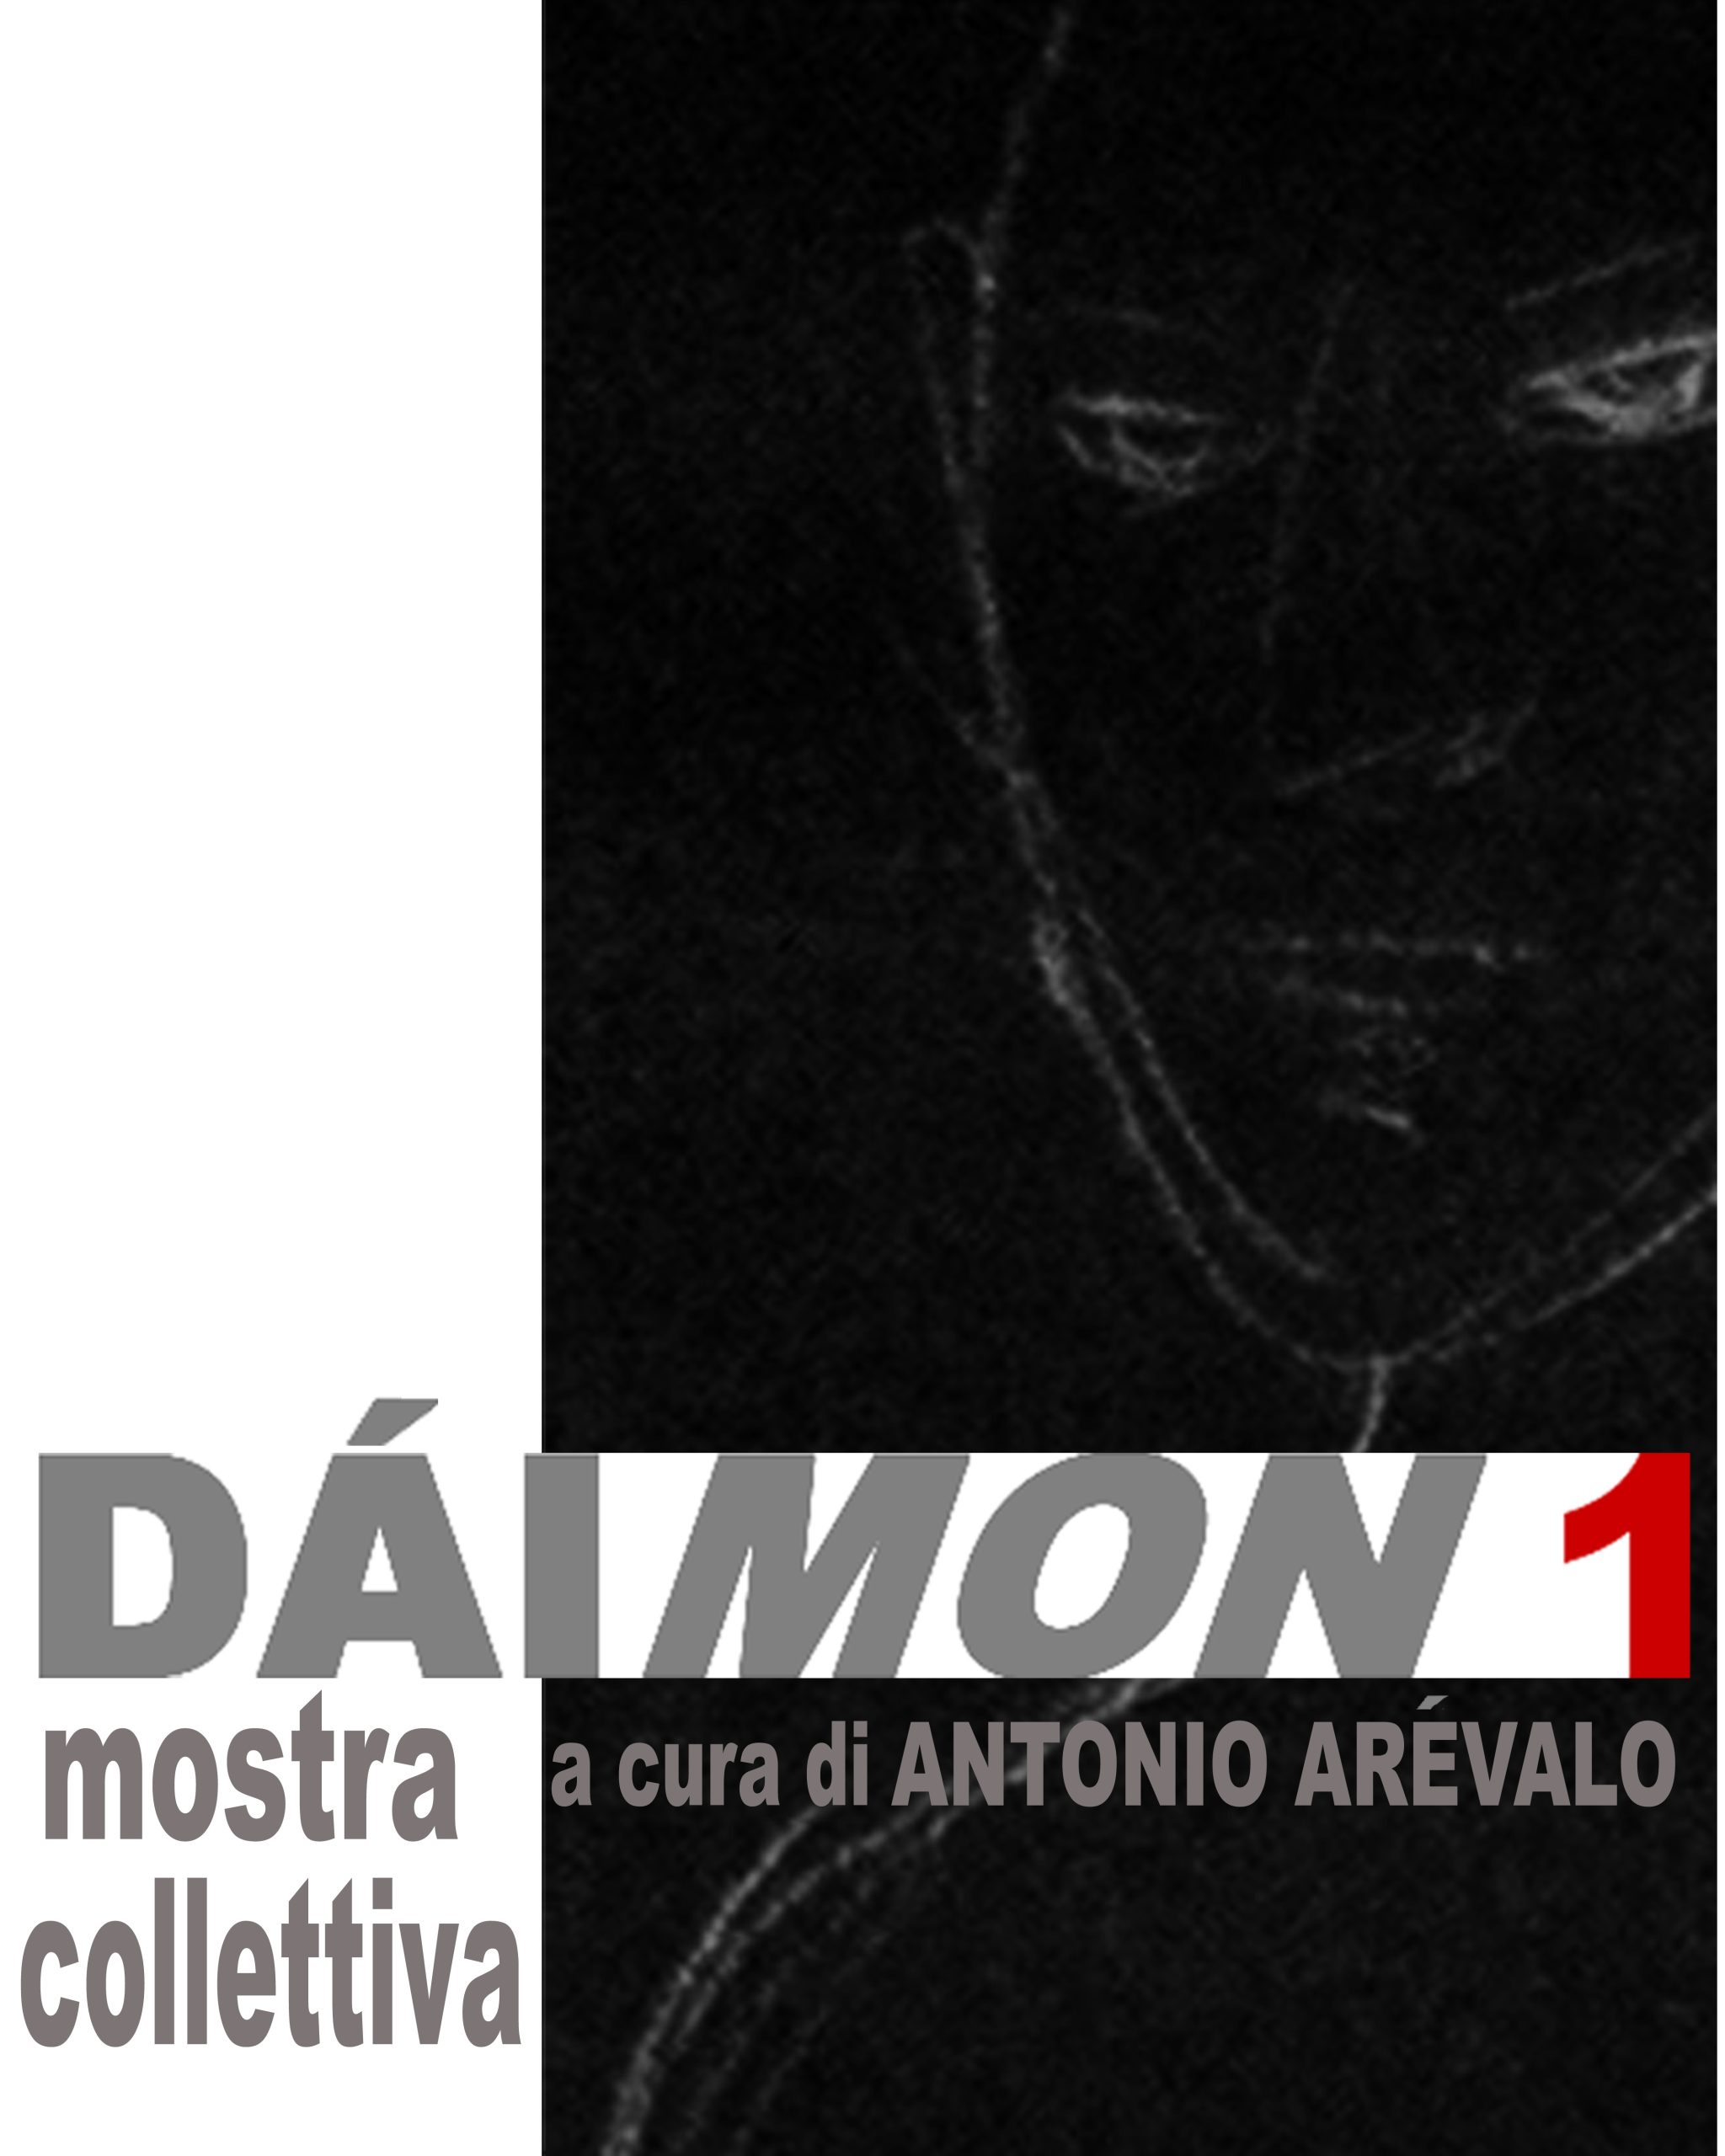 DAIMON 1 (1)